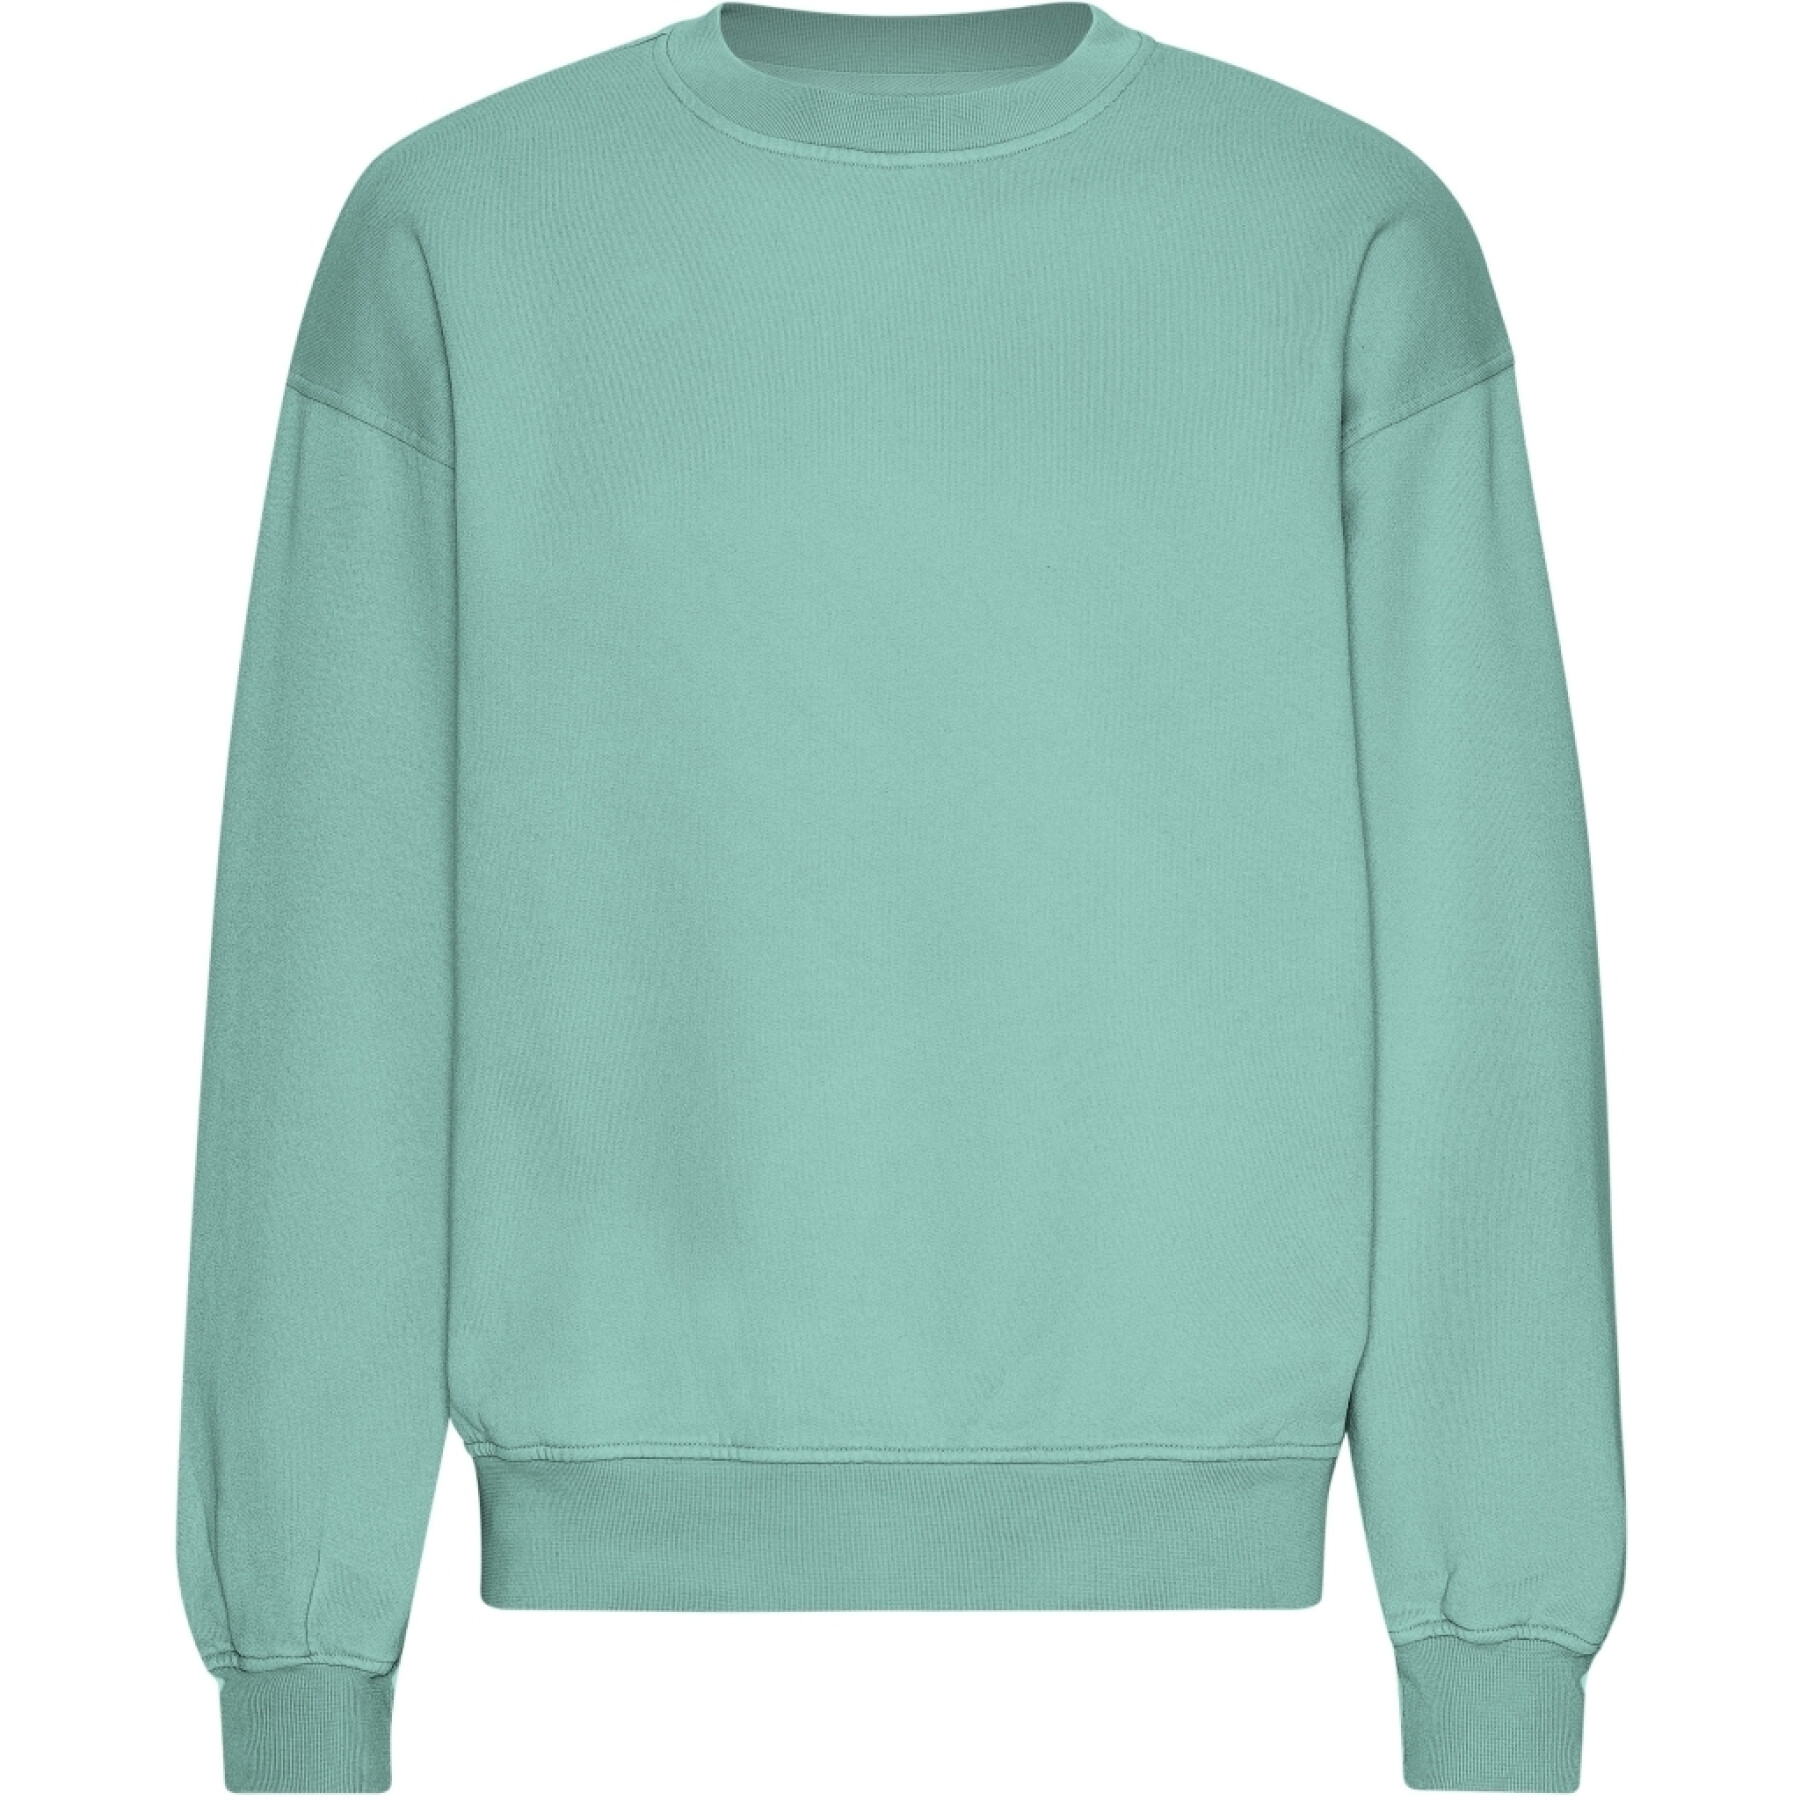 Sweatshirt oversize Colorful Standard Organic